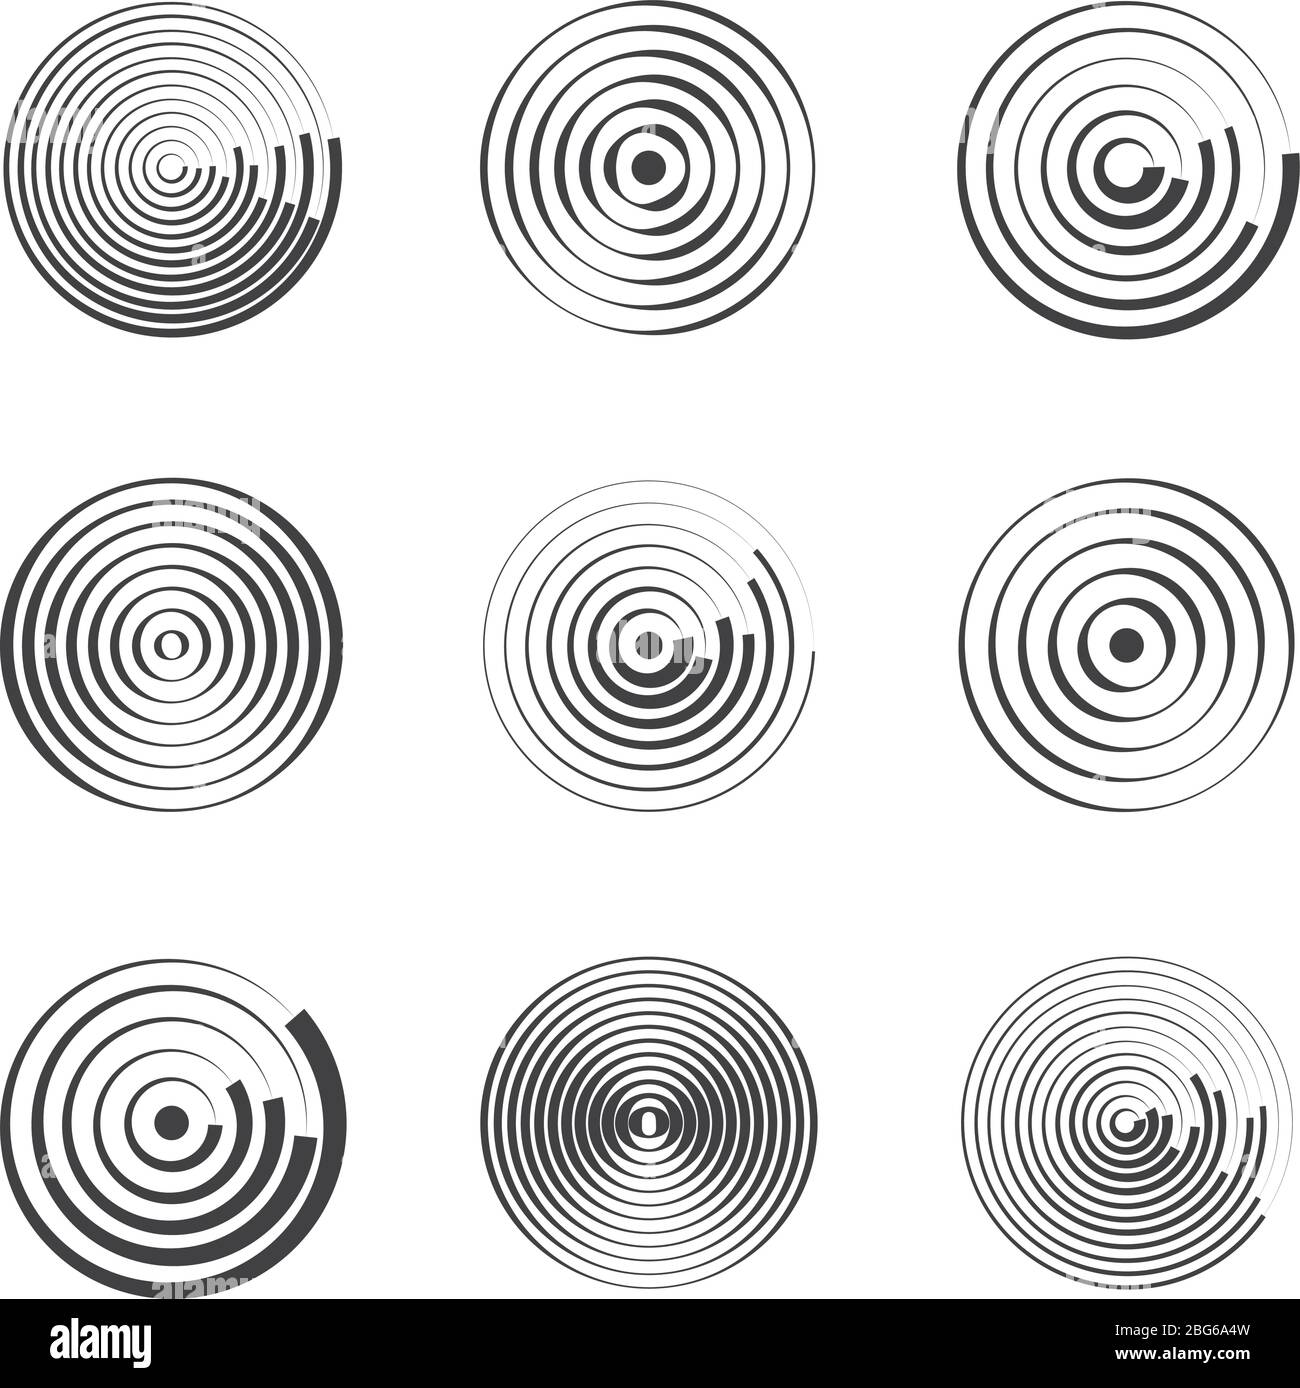 Cercles concentriques abstraits géométriques vectoriels. Formes circulaires et ondes rondes. Anneaux avec lignes radiales. Circulaire, épicentre annulaire Illustration de Vecteur